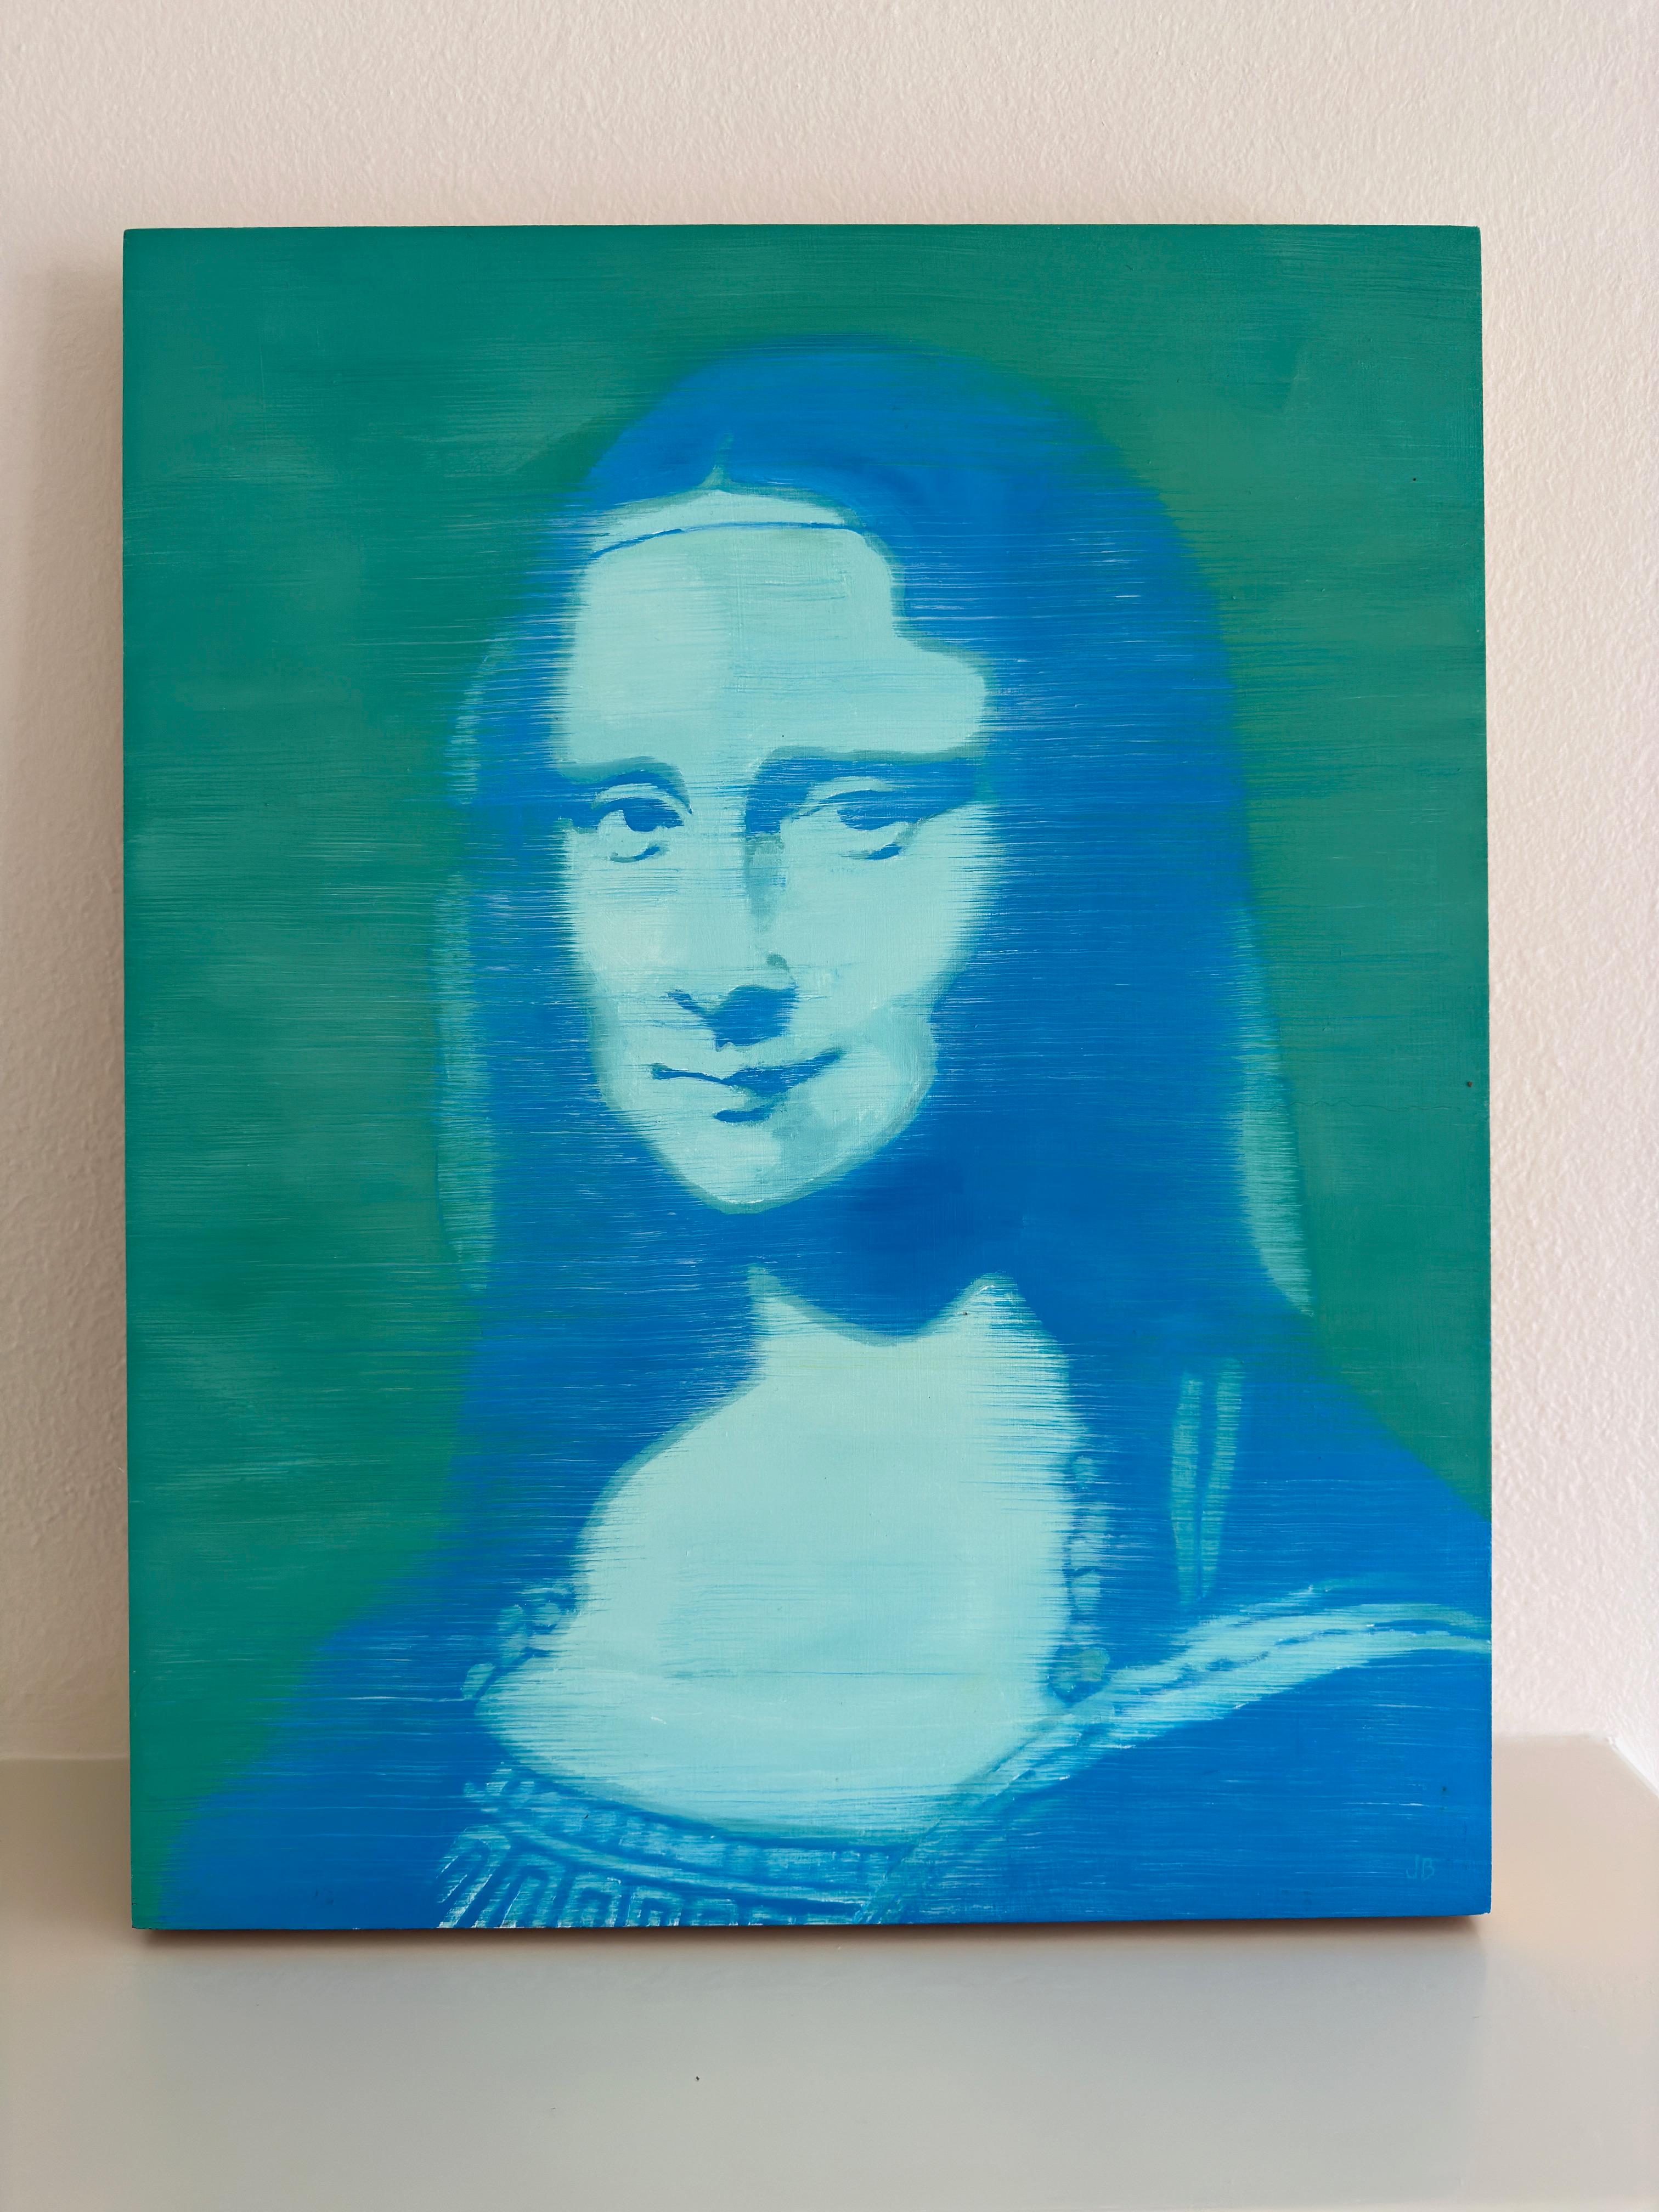 VÉRIFIEZ QUE LA LIVRAISON EST GRATUITE À LA CAISSE.

EXPLICATION DE L'ARTISTE SUR LES PEINTURES :
Mona Lisa en mesures bleues  20 x 16